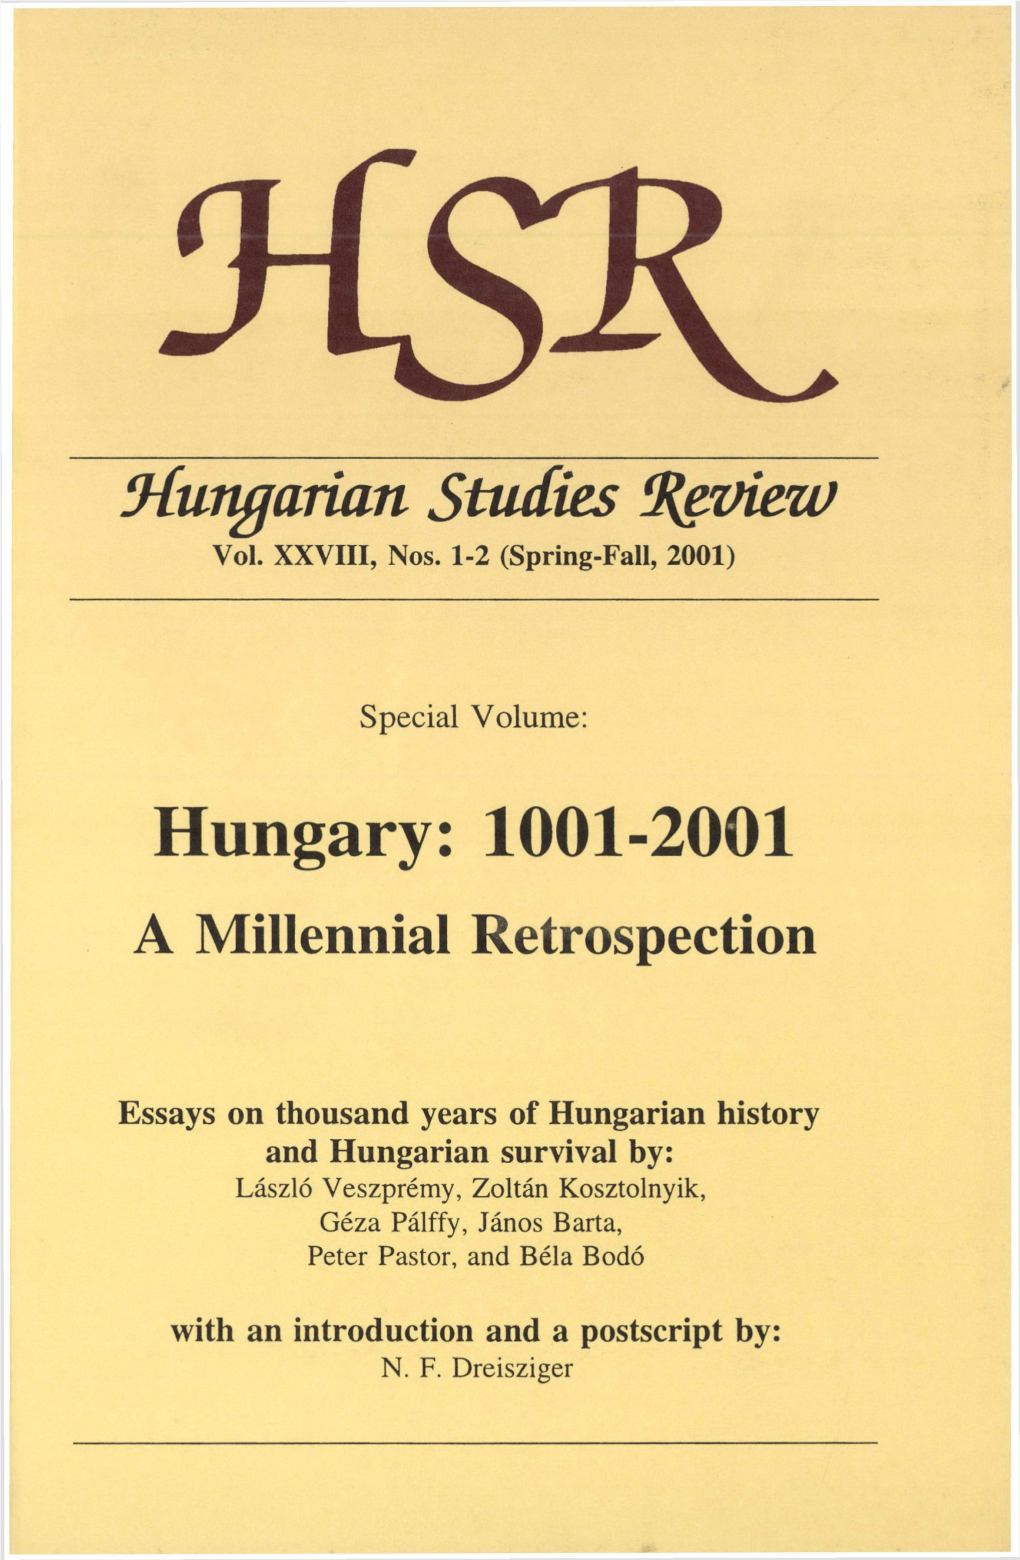 Hungarian Studies Review Vol